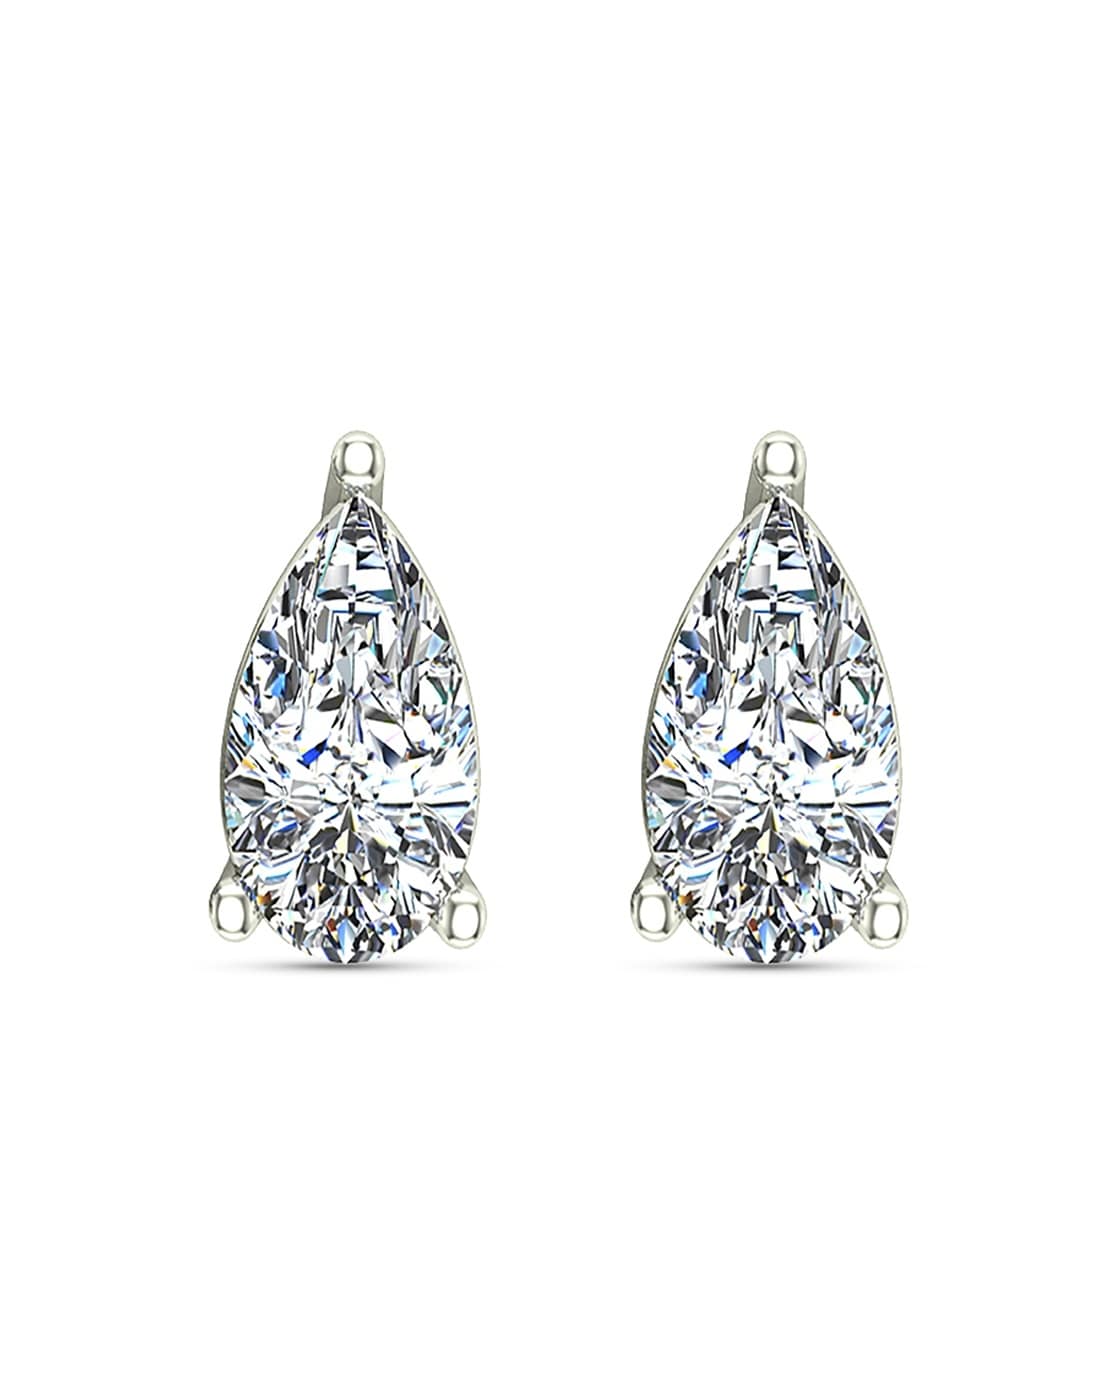 Infinity Opal 9ct White Gold Stud Earrings | Jian London